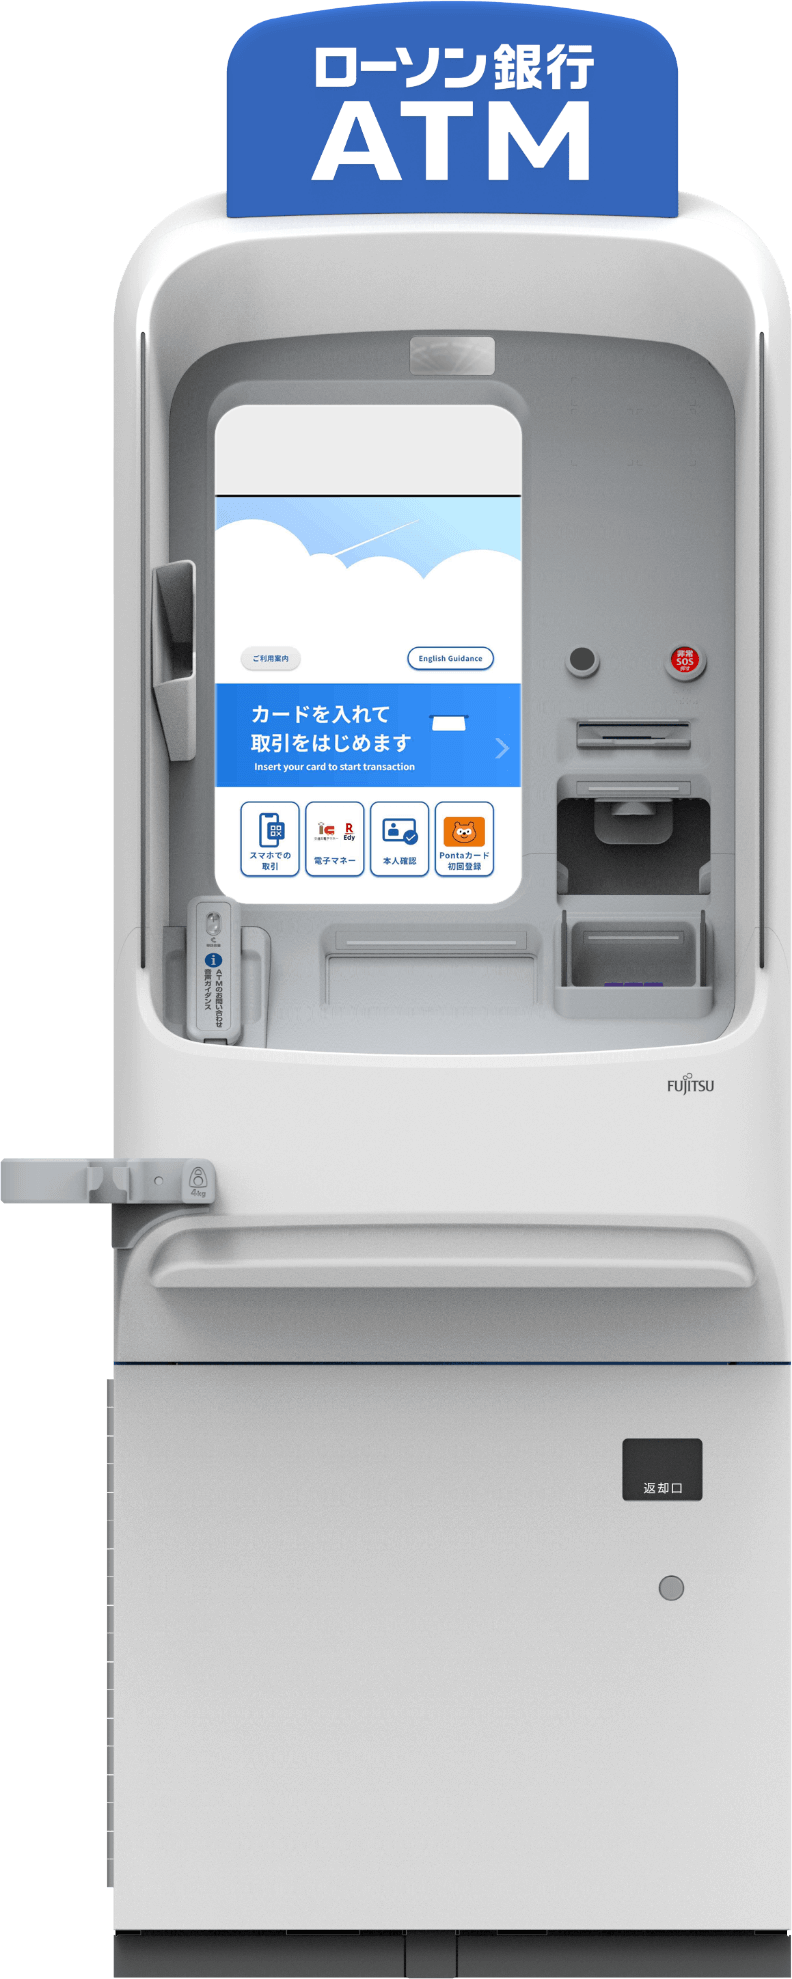 ローソン銀行「新型ATM」